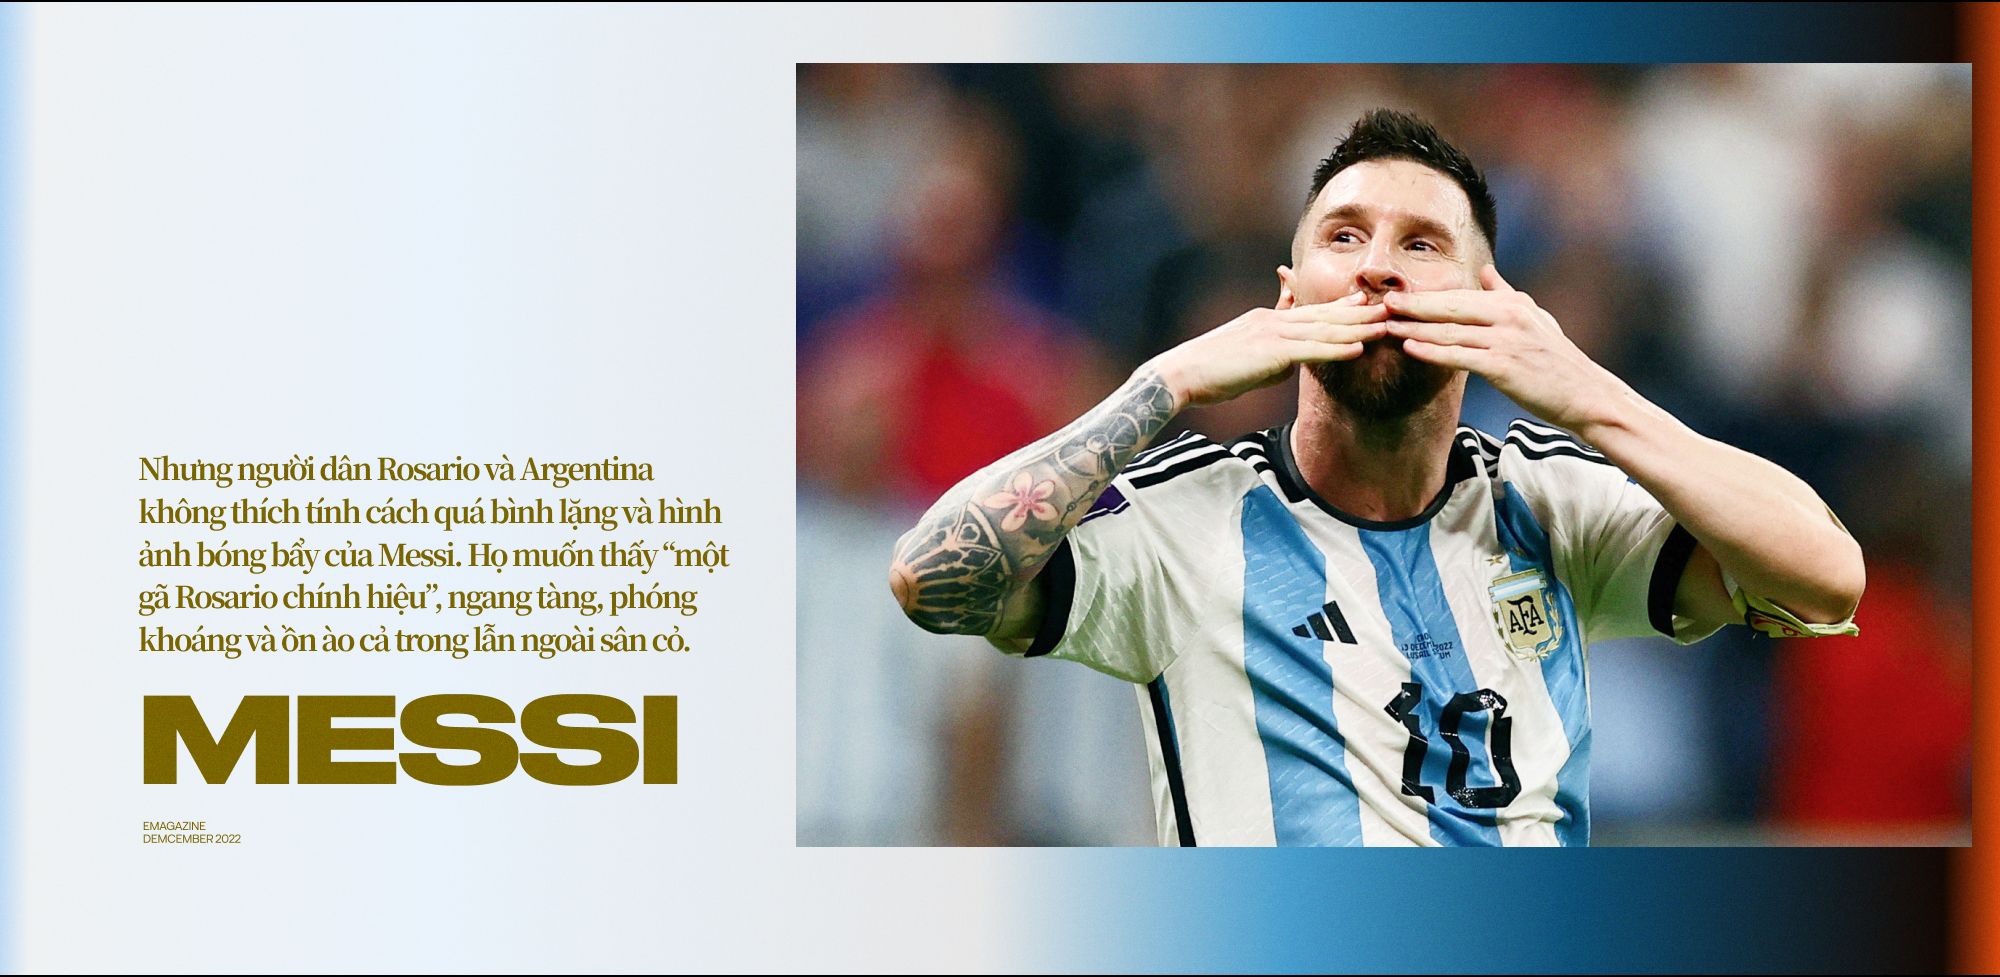 Messi: Từ đứa con thất lạc trở thành người hùng Argentina và cầu thủ vĩ đại nhất của thế hệ này! - Ảnh 12.